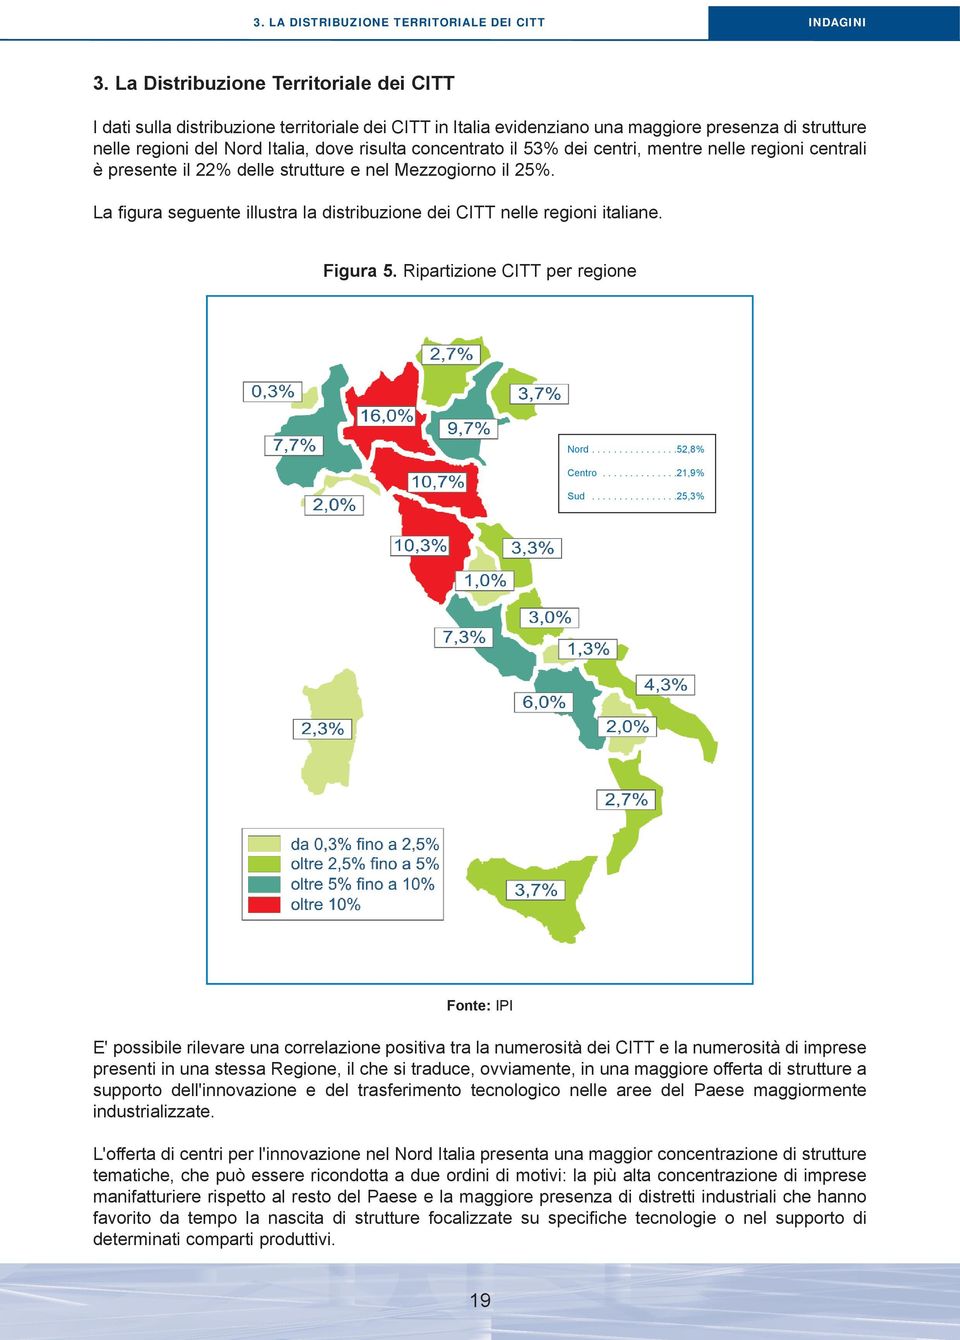 concentrato il 53% dei centri, mentre nelle regioni centrali è presente il 22% delle strutture e nel Mezzogiorno il 25%. La figura seguente illustra la distribuzione dei CITT nelle regioni italiane.